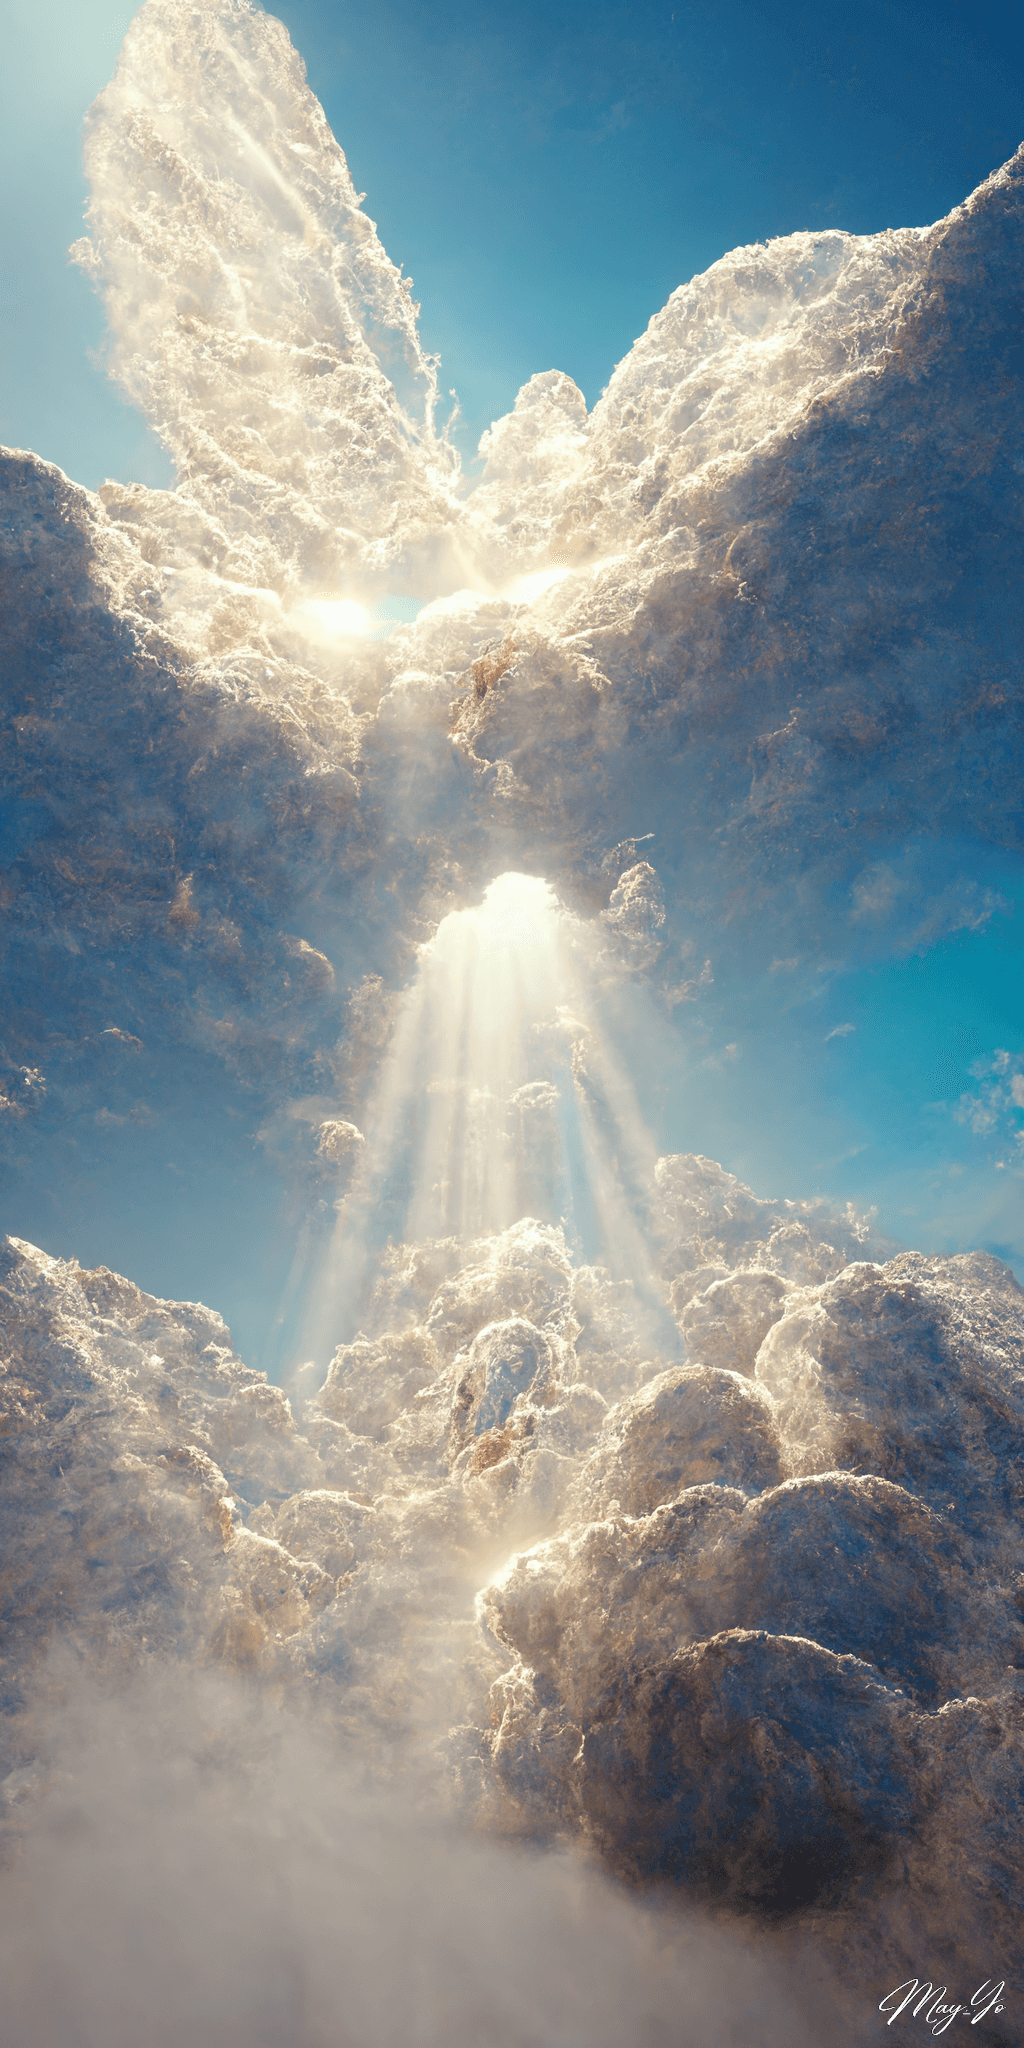 天使のはしごをイメージした壁紙イラスト 天使が昼寝をしている雲の上の待受 AIイラスト待受 縦長画像 angel ladder illustration fiction art